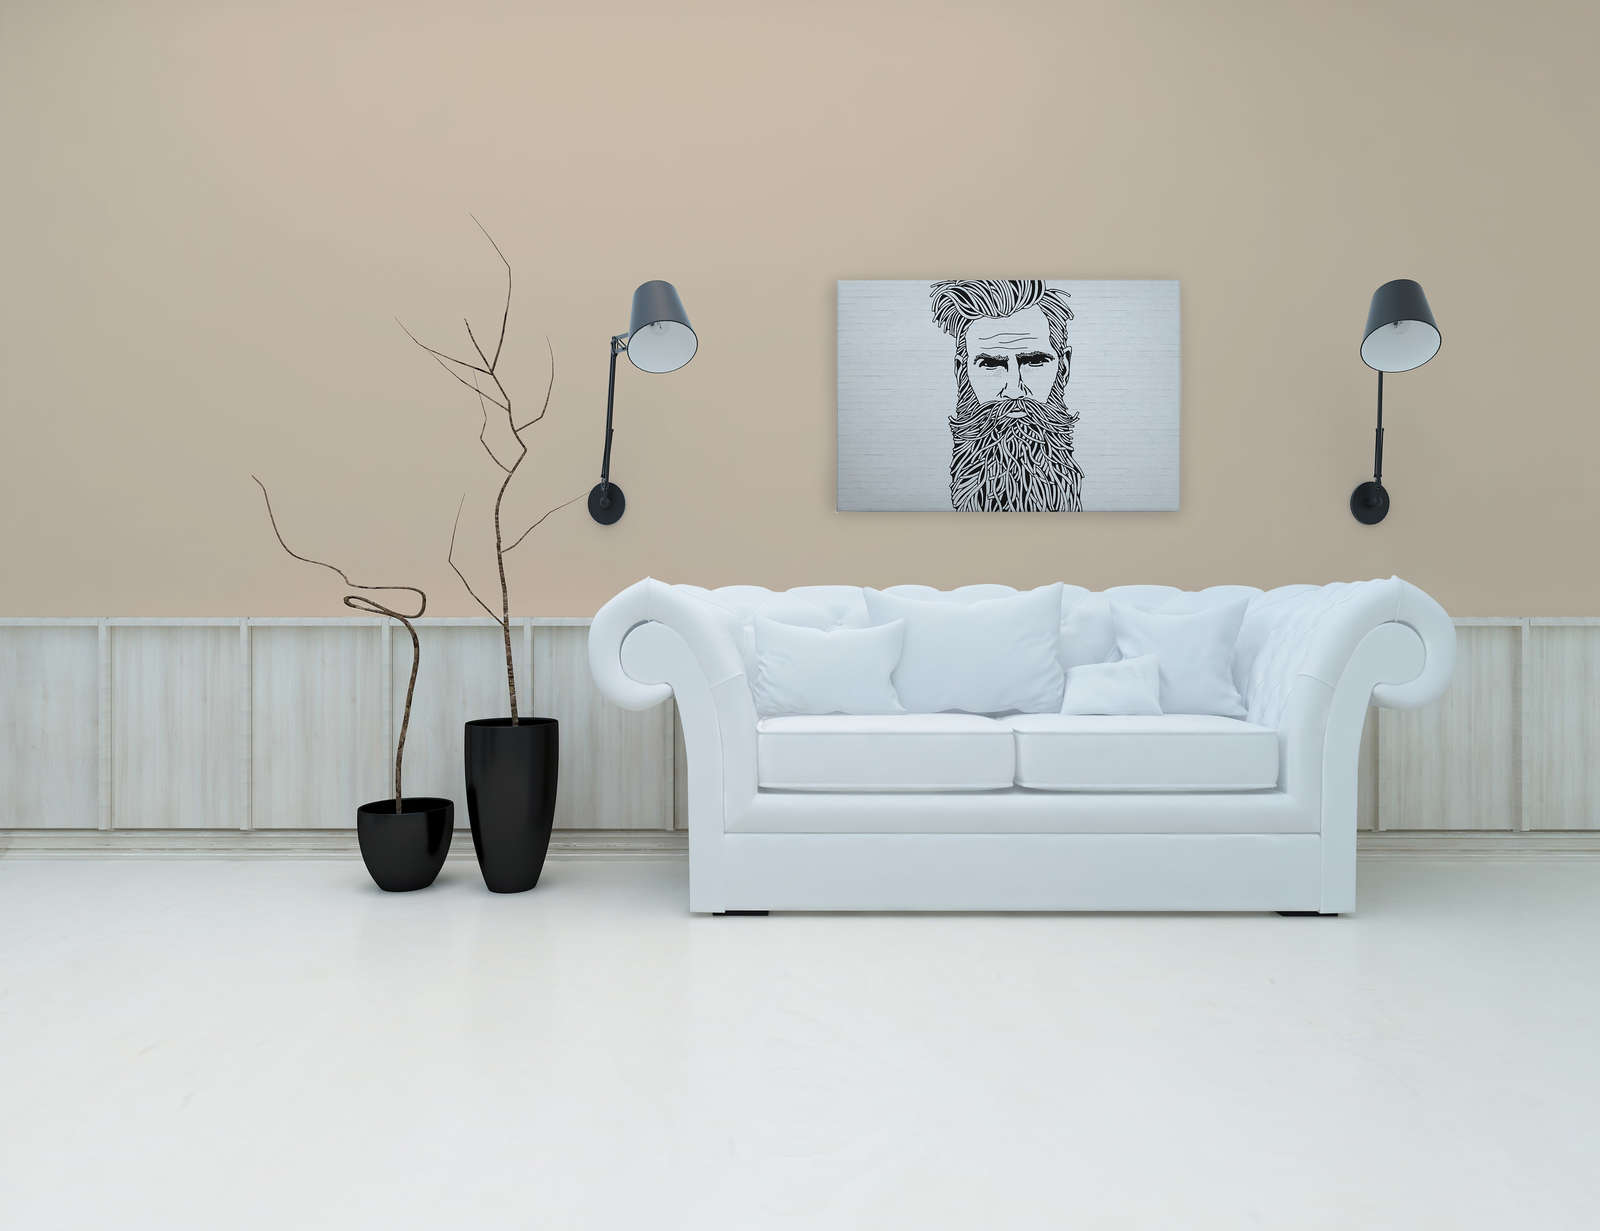             Toile blanche aspect pierre avec portrait d'homme style dessin - 0,90 m x 0,60 m
        